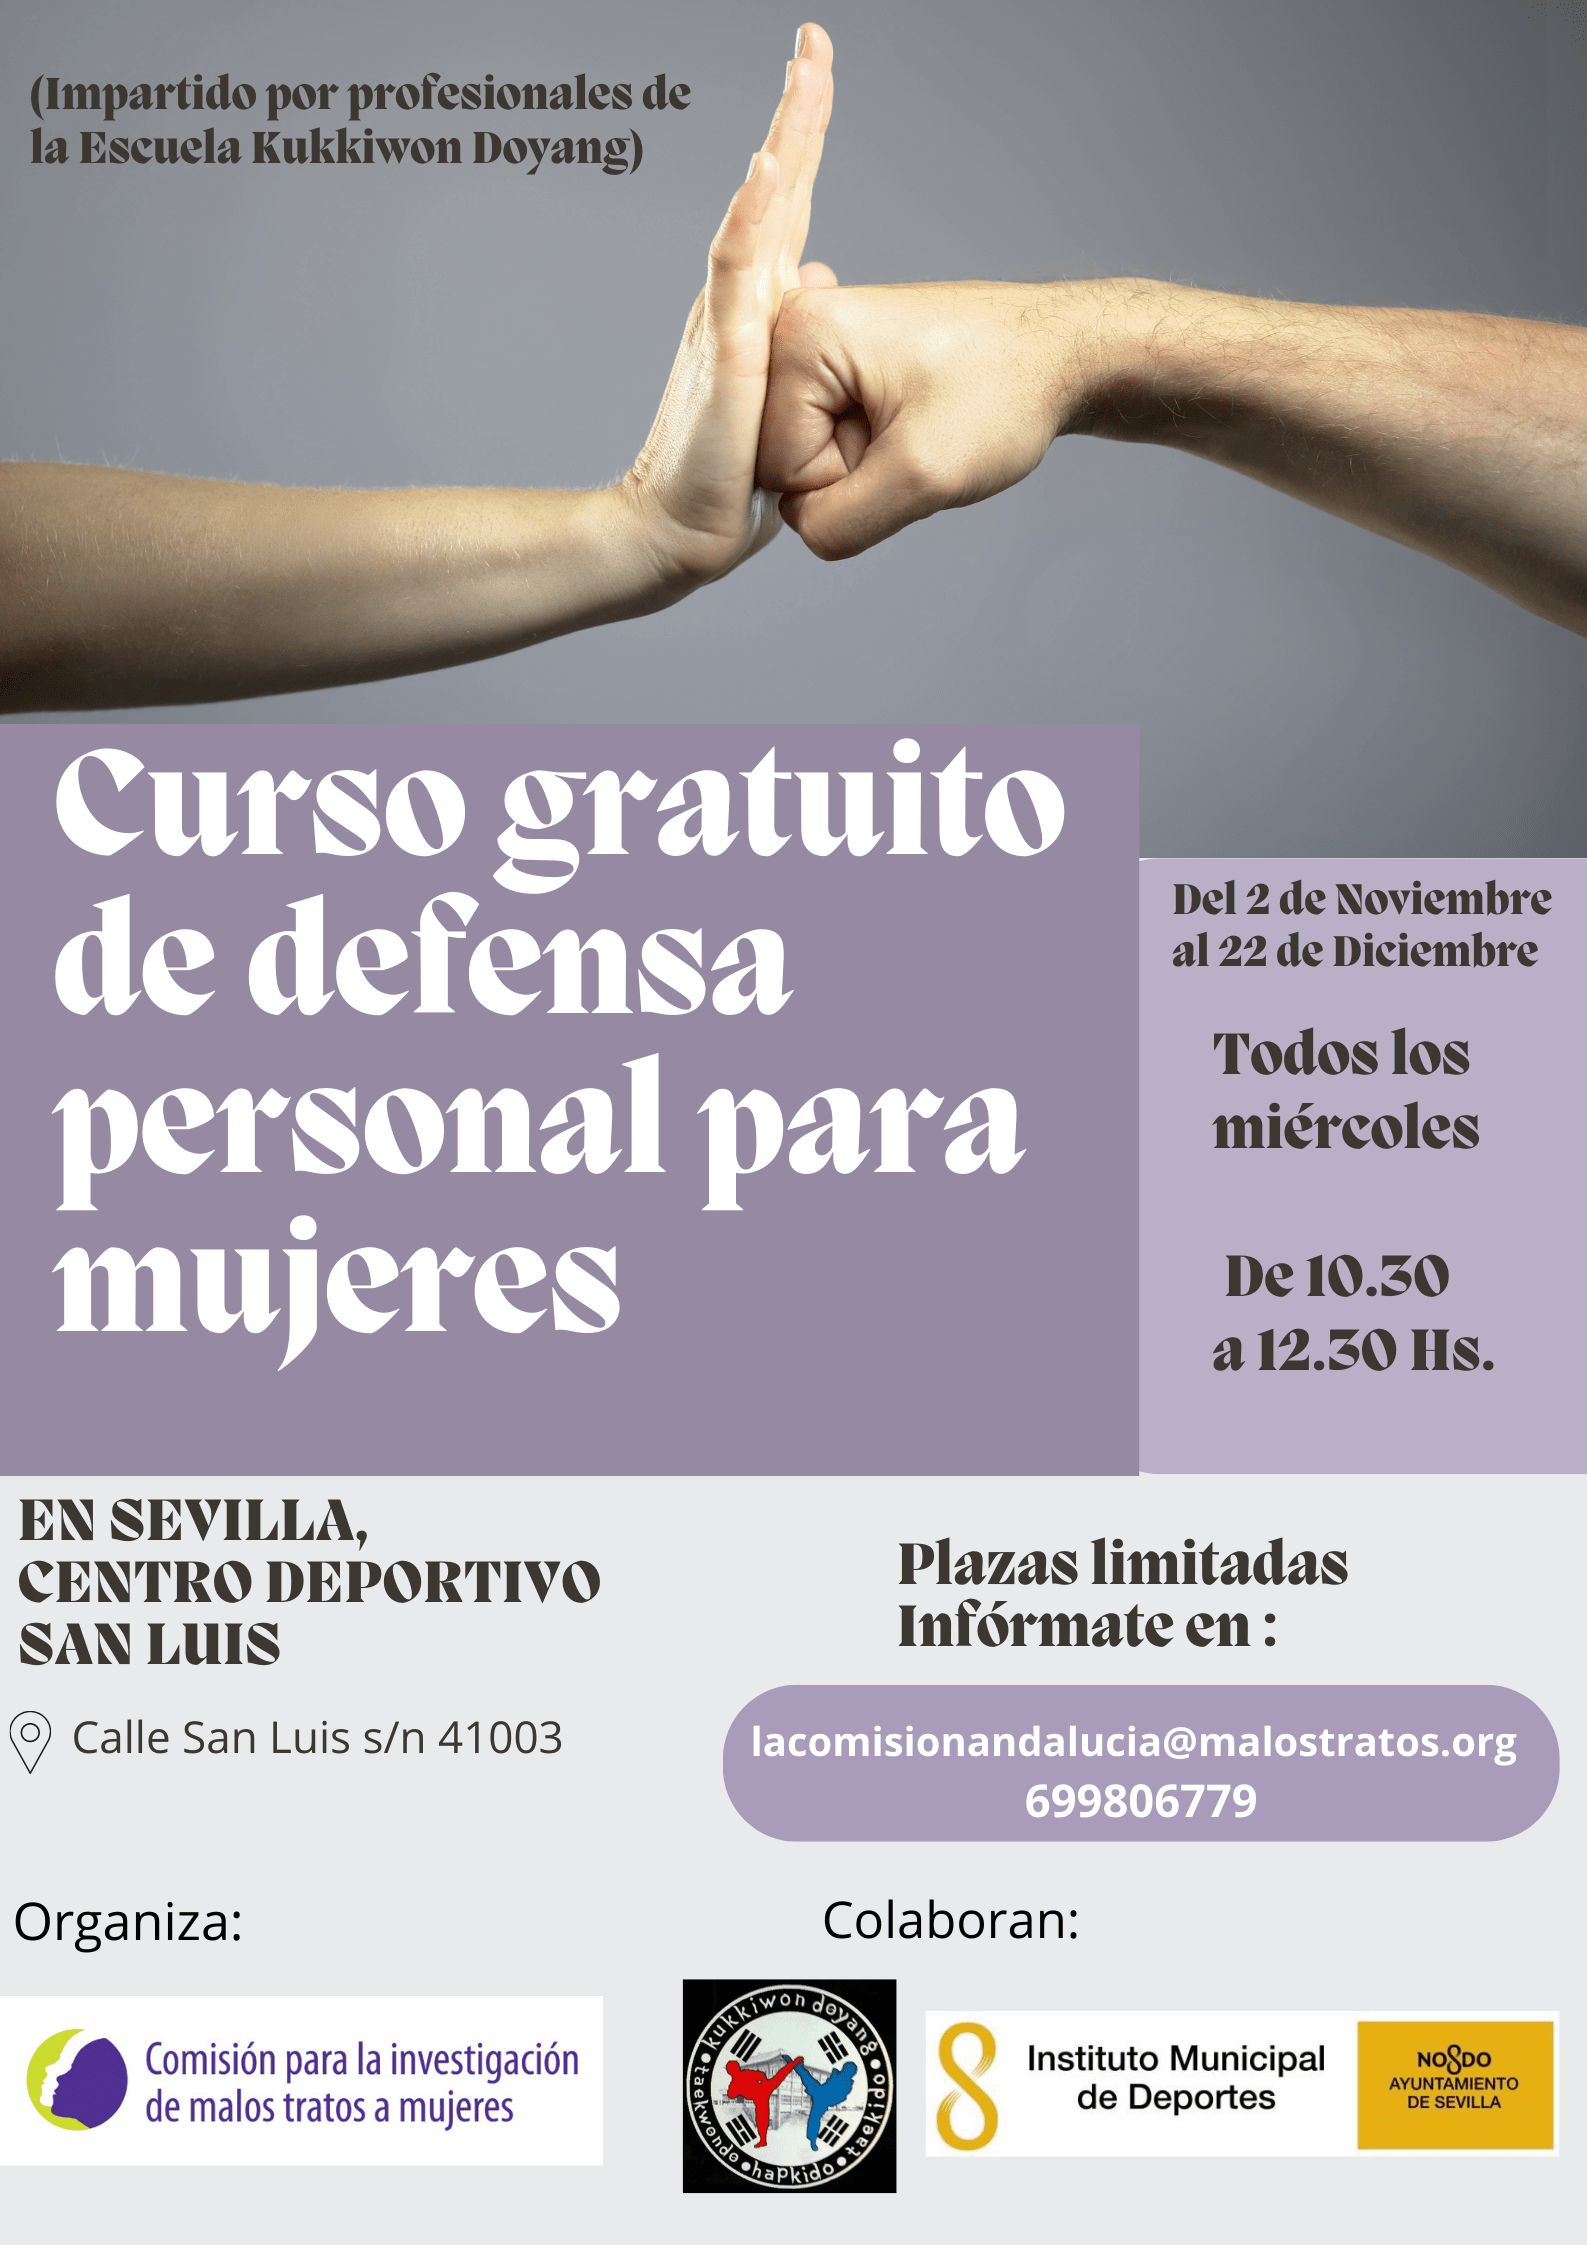 Curso de defensa personal femenina, en Cilsa – ELSURDIARIO.COM